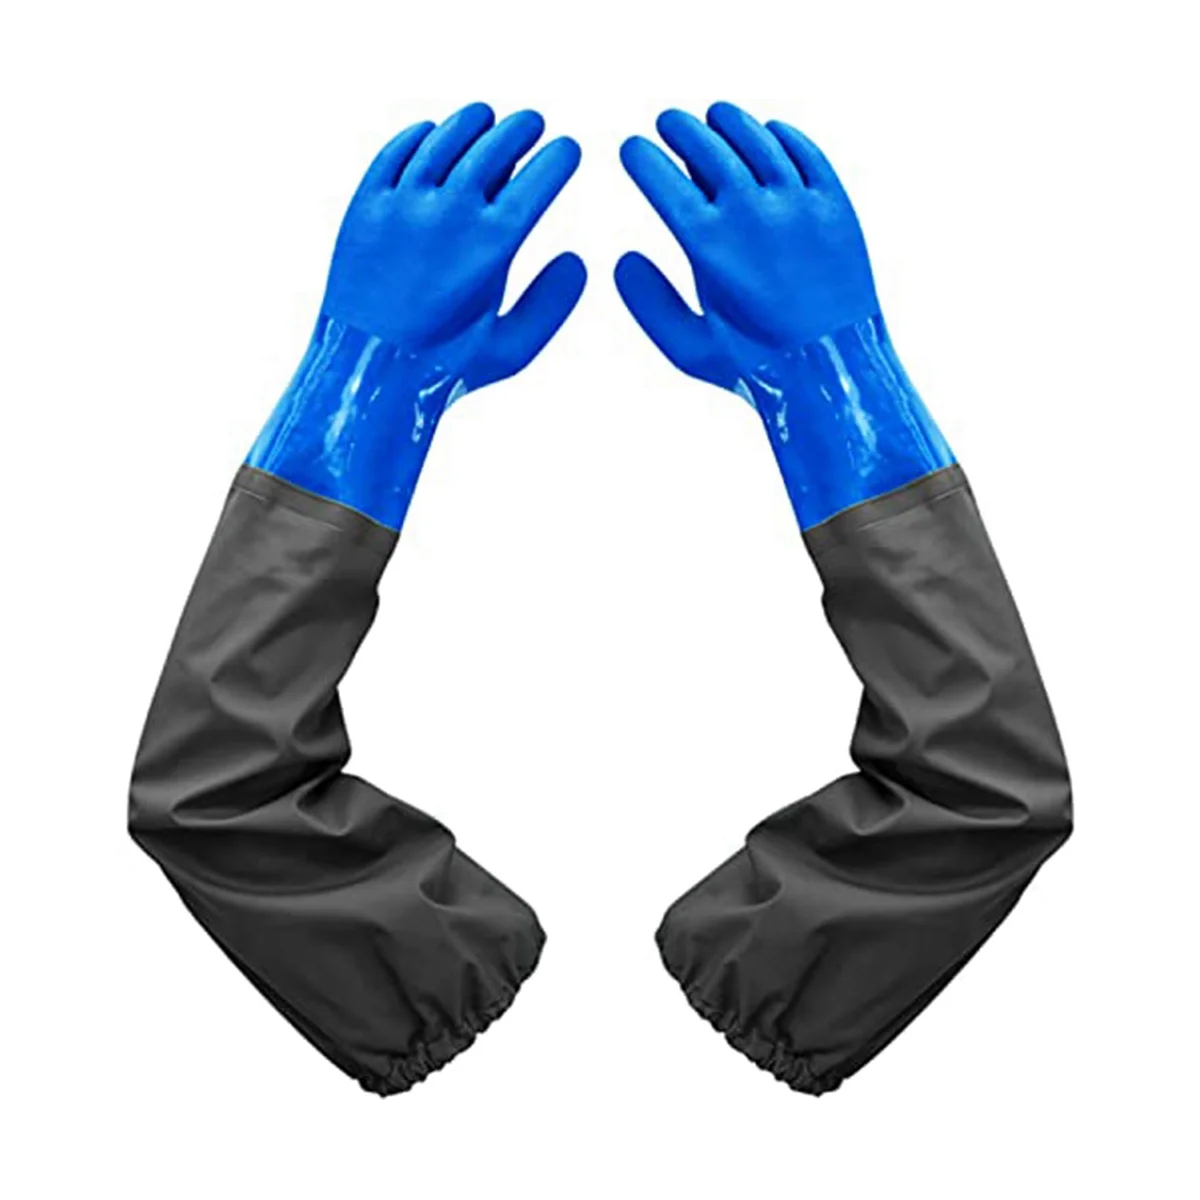 Длинные резиновые перчатки, длинные водонепроницаемые перчатки и сверхпрочные водонепроницаемые перчатки для работы с вредными веществами и кислотами